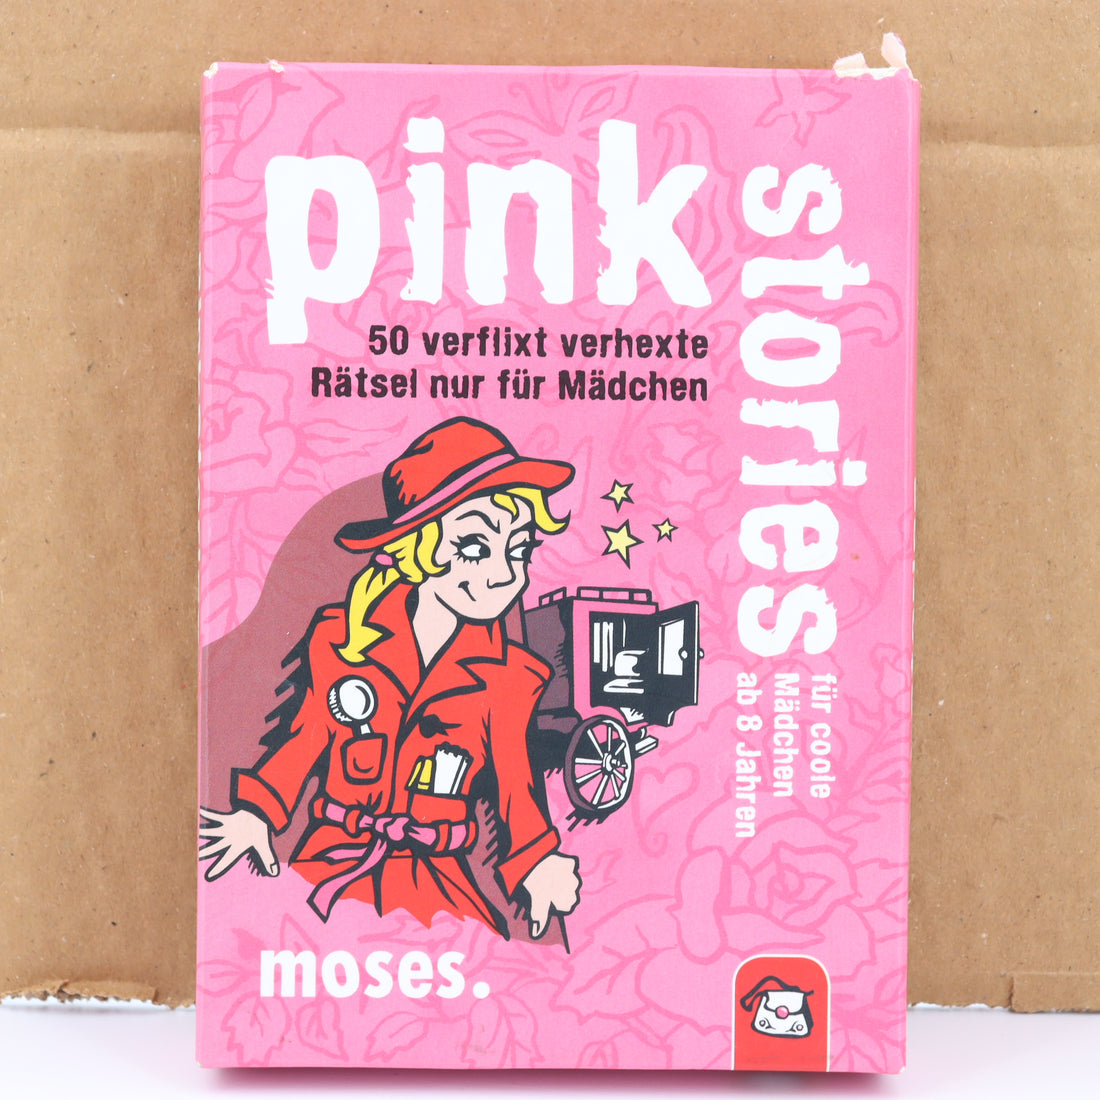 Kartenspiel - moses -  Pink Stories  - 50 verflixt verhexte Rätsel nur für Mädchen - guter Zustand